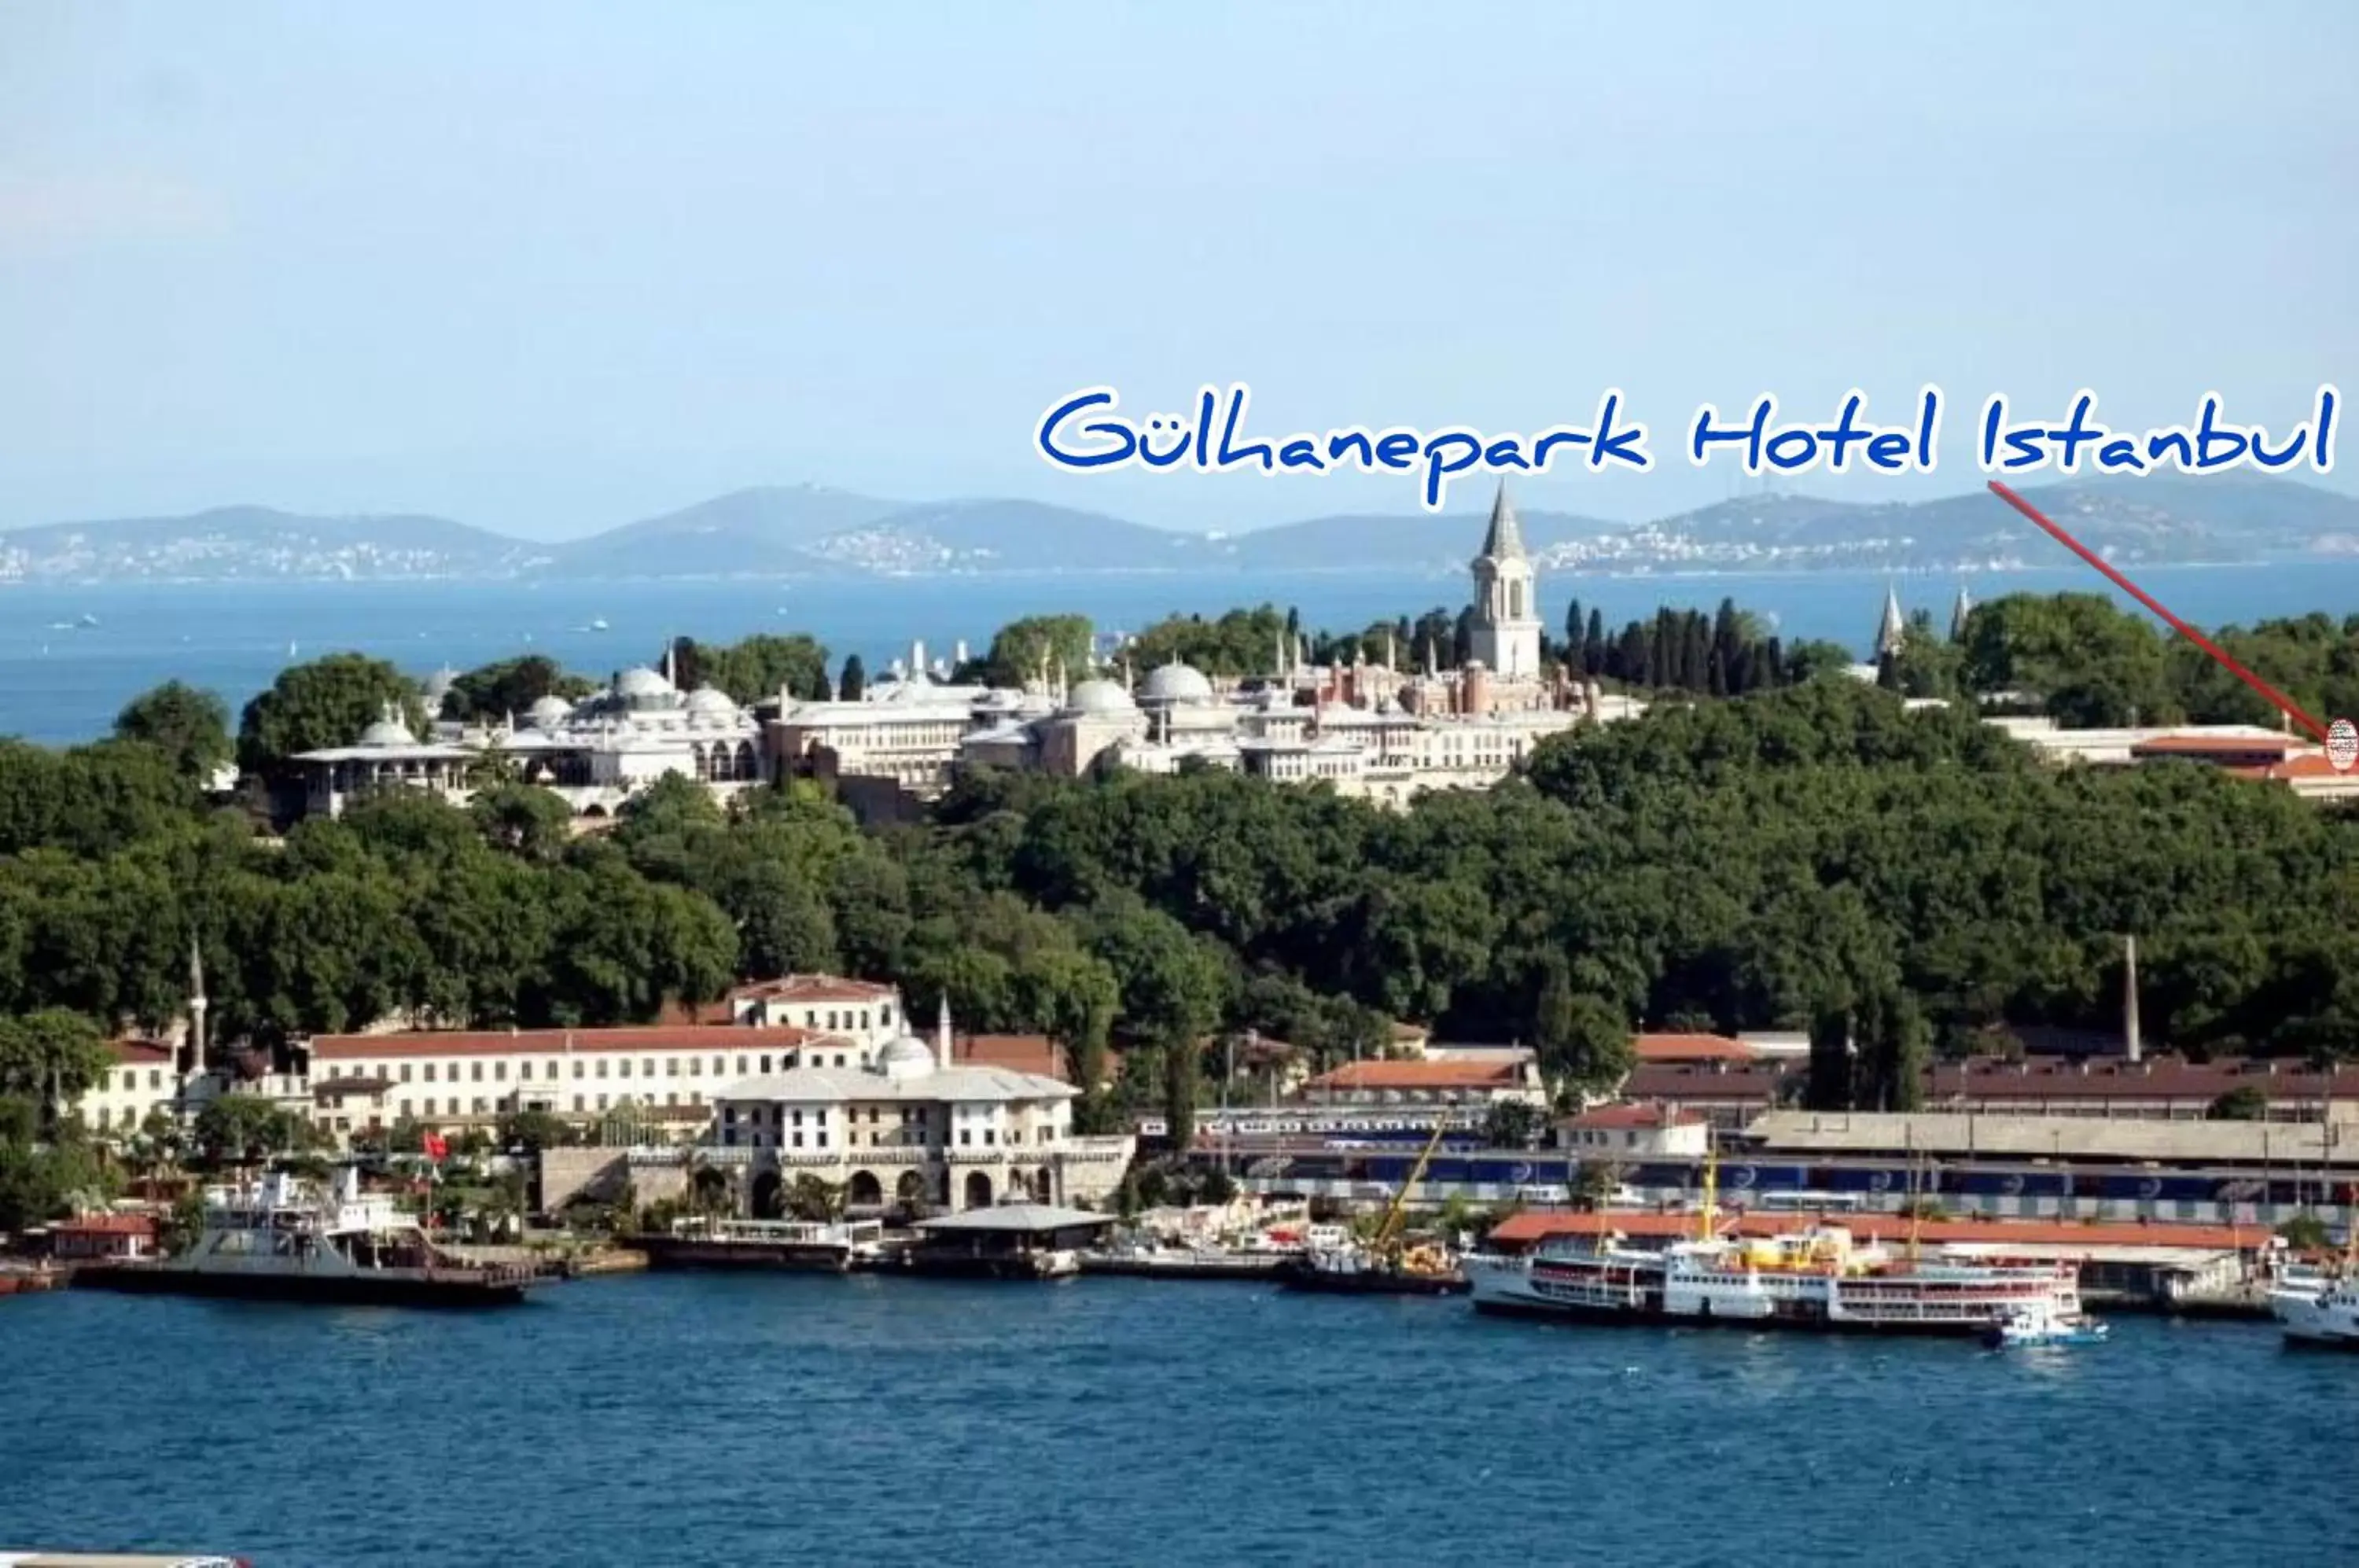 City view in Gülhanepark Hotel & Spa